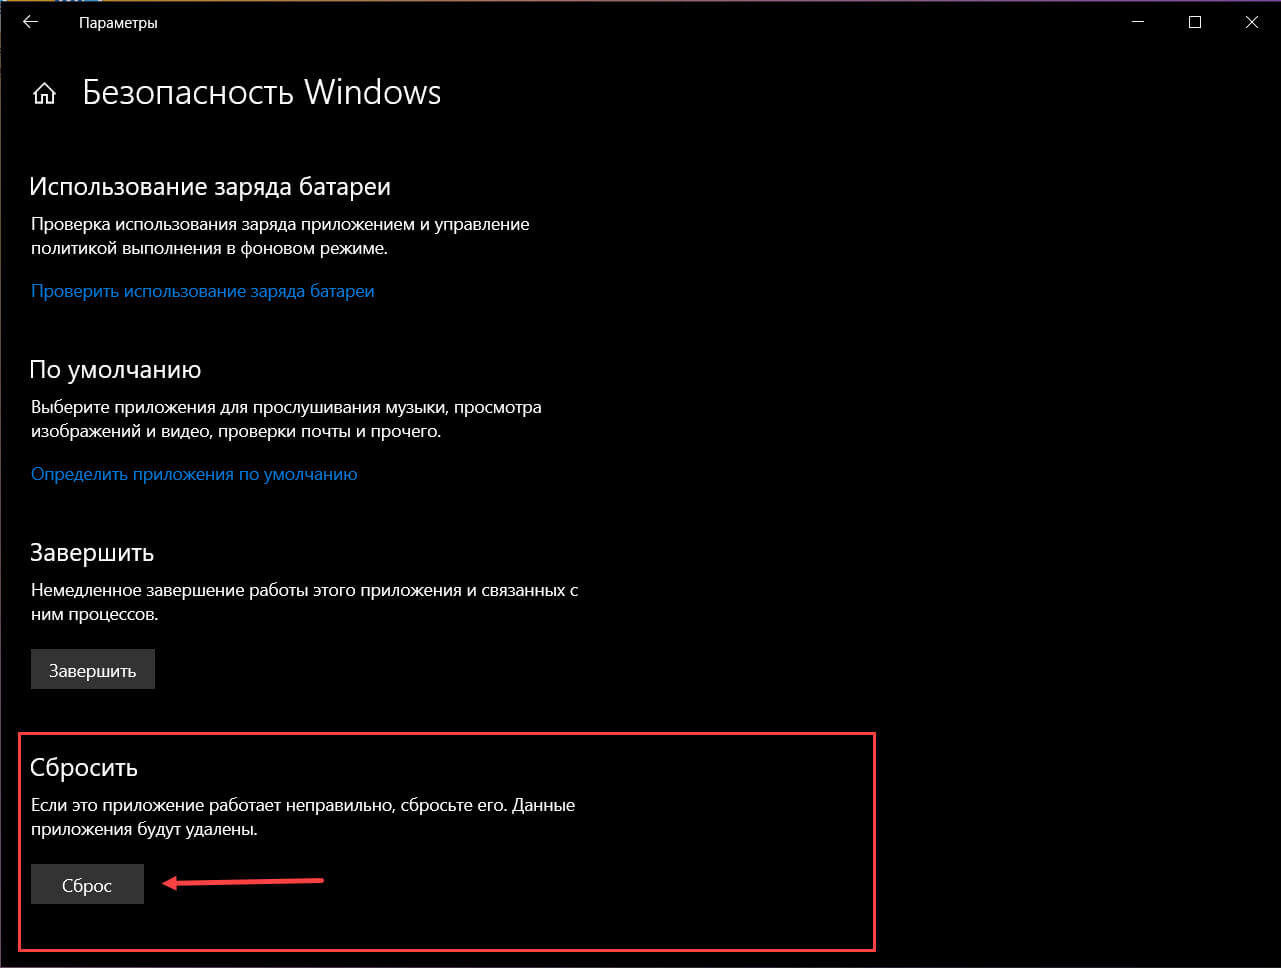 Раздел приложения для сброса безопасности Windows